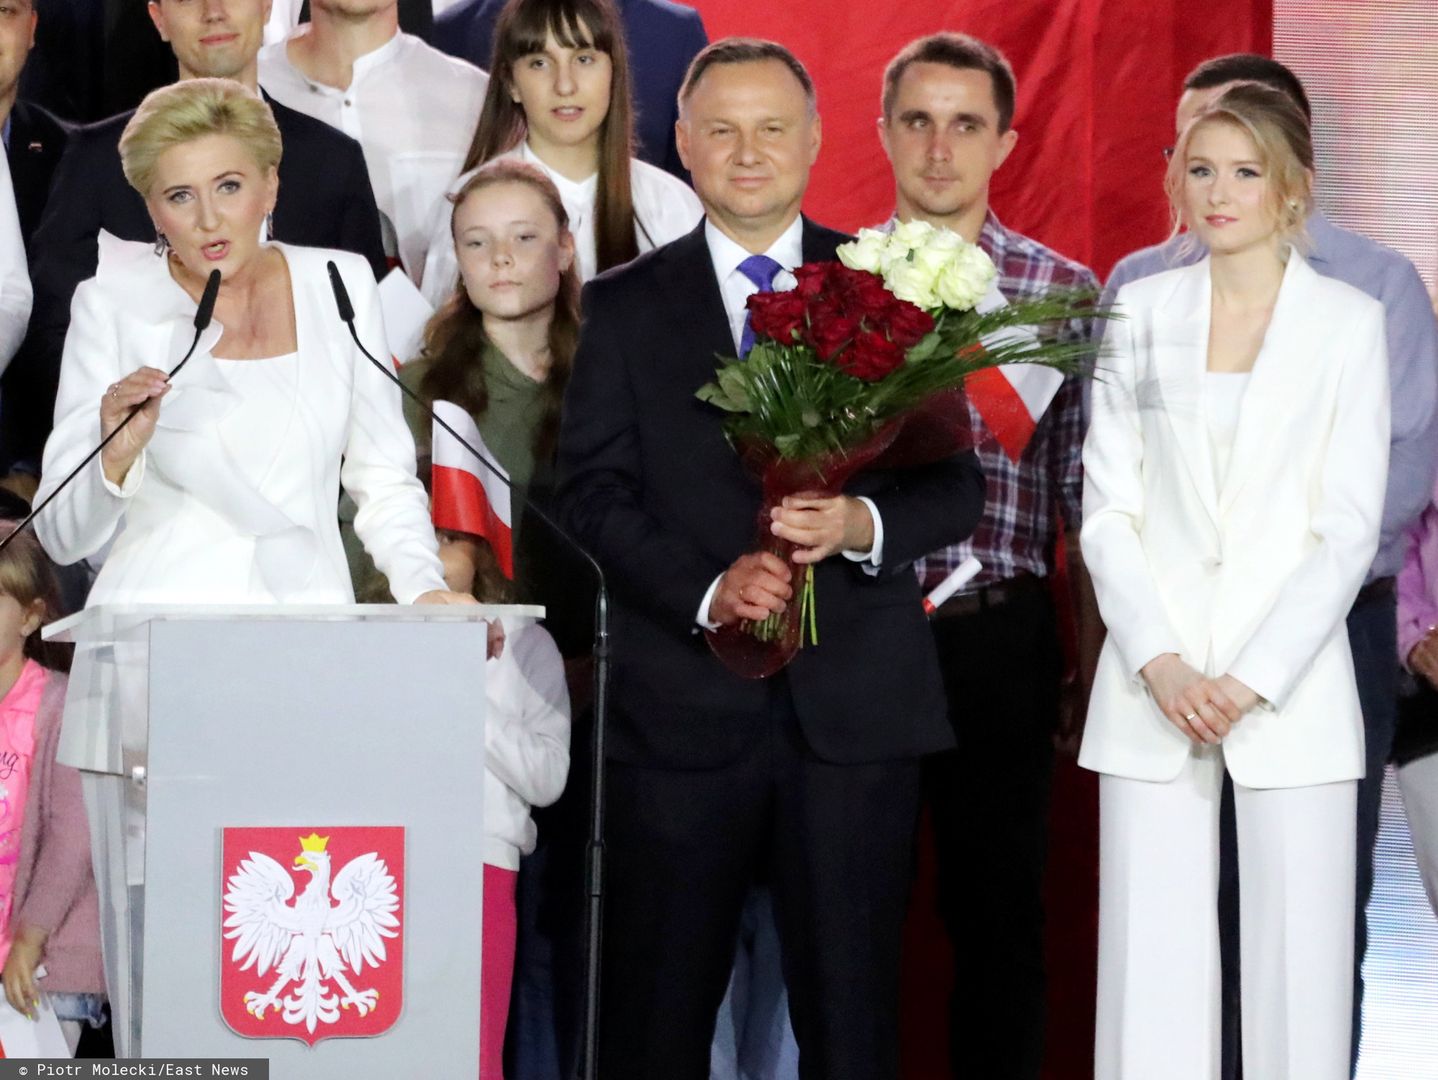 Wybory 2020. Ekspert komentuje wyniki exit poll. "Andrzej Duda nie może spać spokojnie"